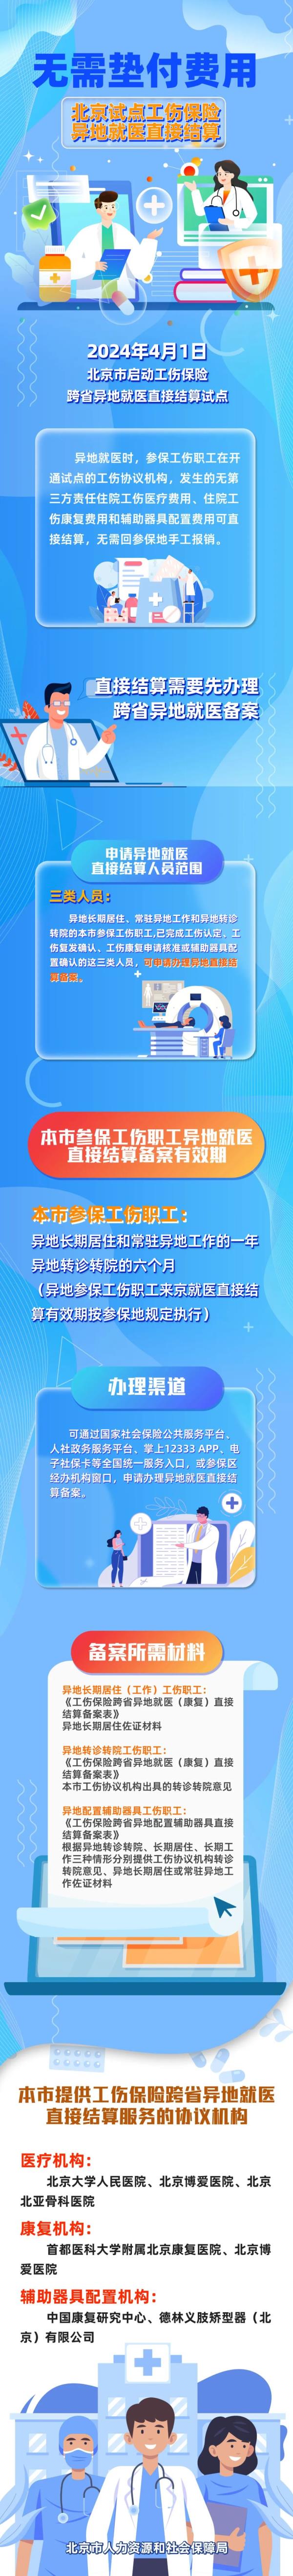 北京4月1日启动工伤保险跨省异地就医直接结算试点